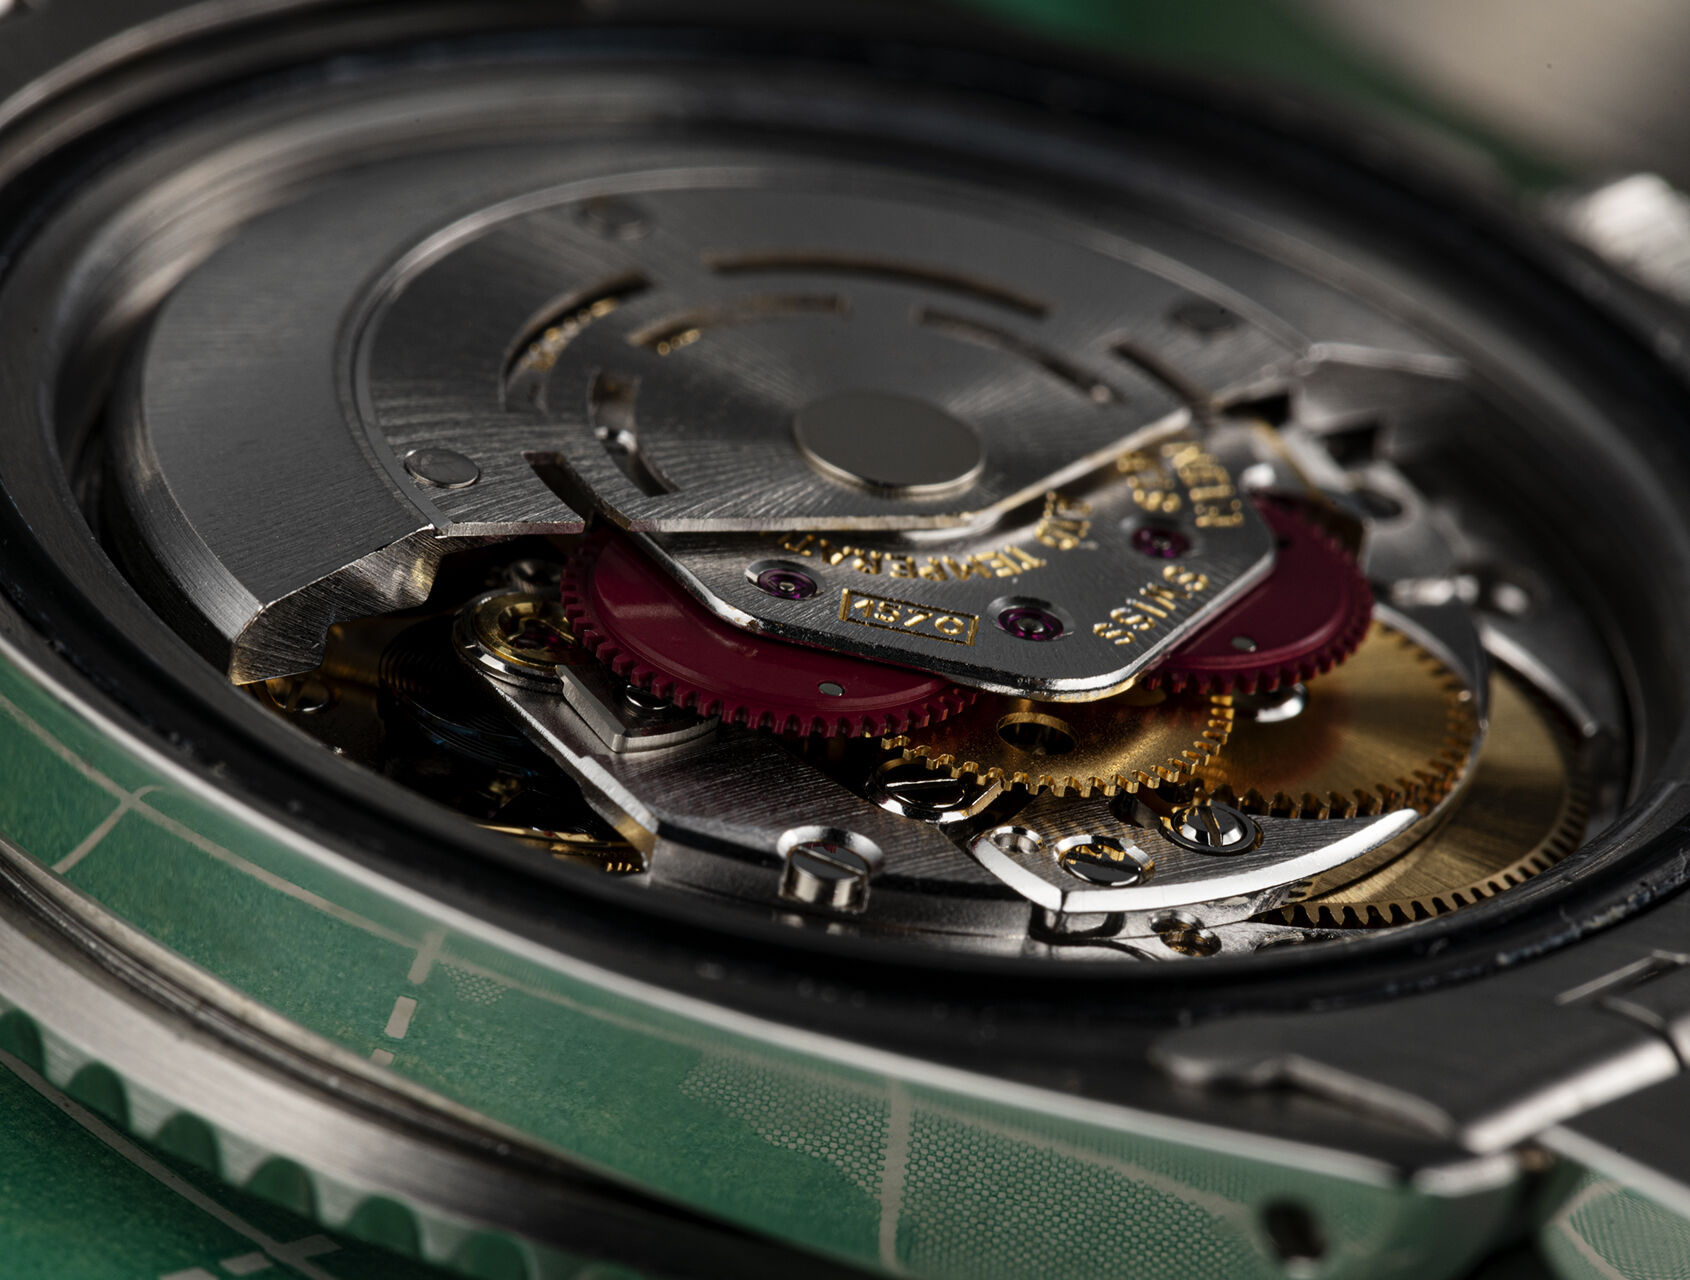 ref 1675 | 1675 - Vintage | Rolex GMT-Master